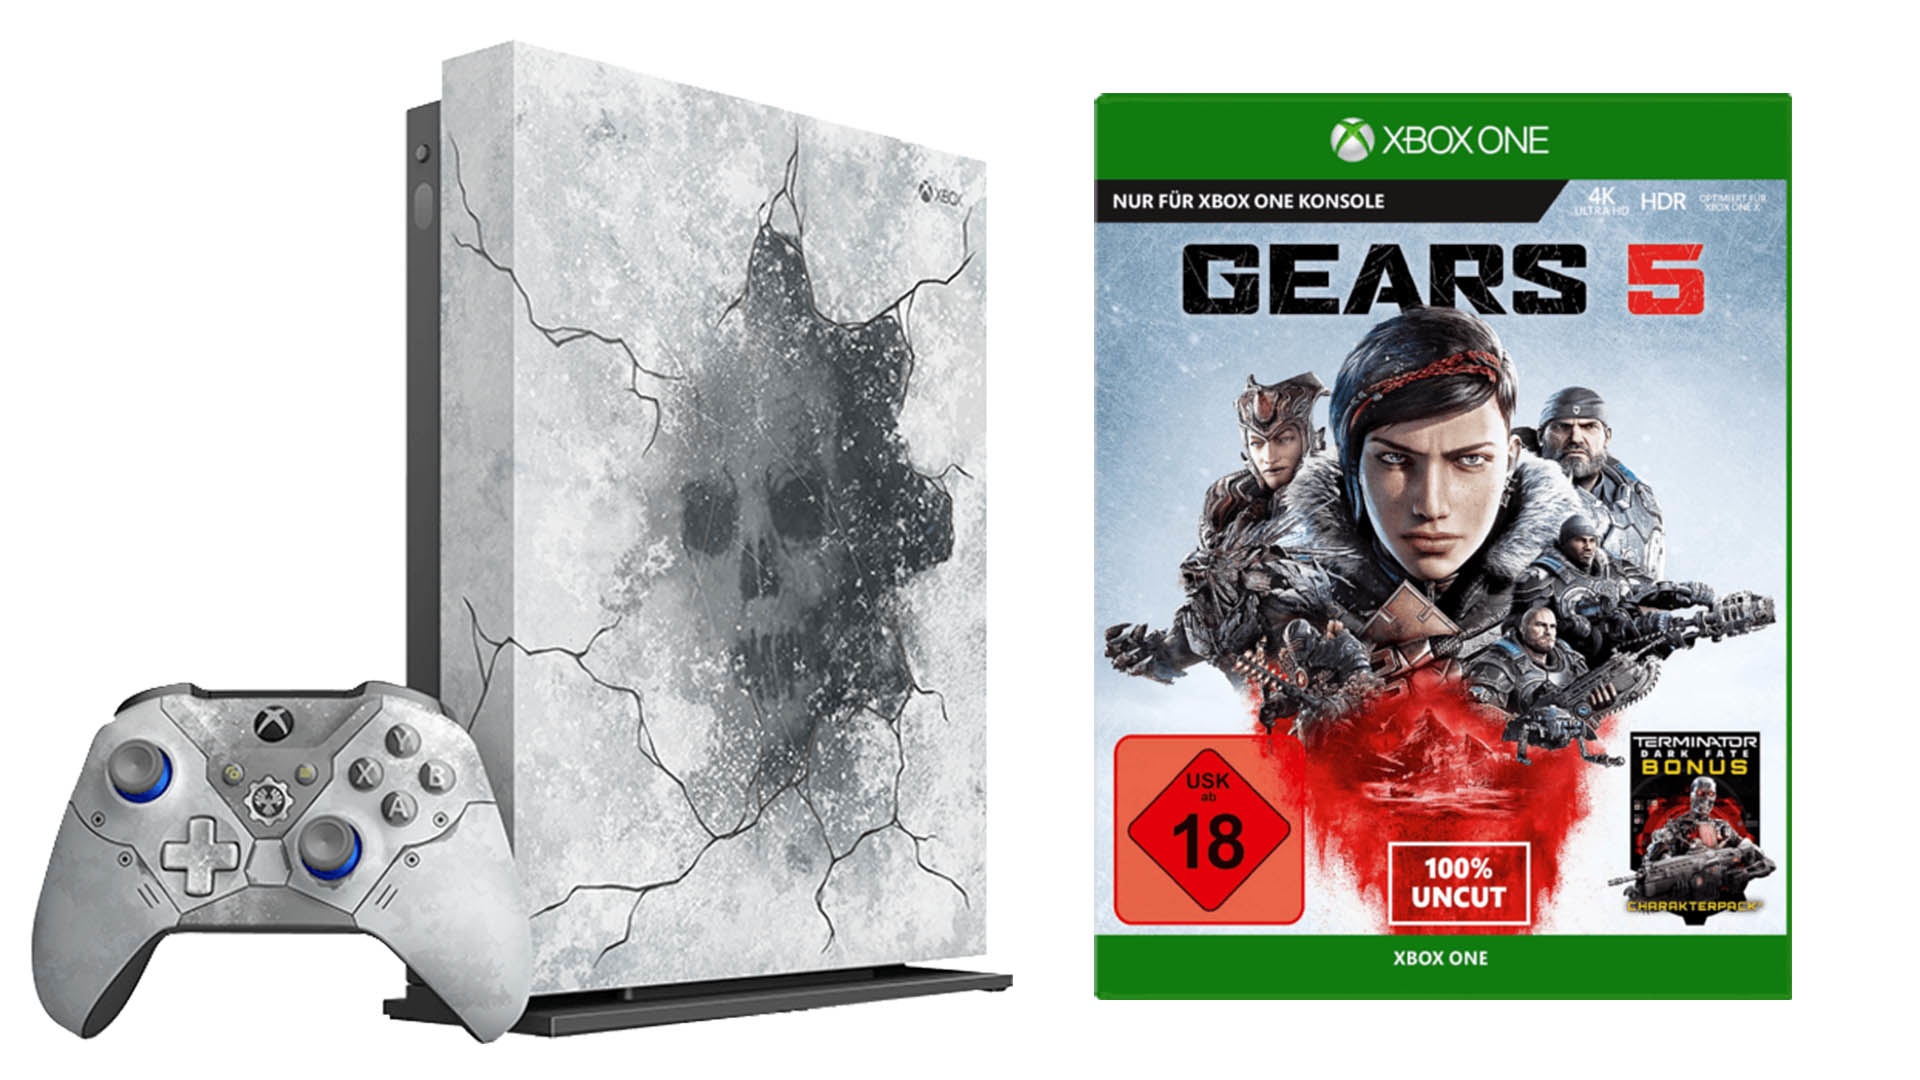 barricada Geometría Todopoderoso Das gefeierte Gears 5 jetzt bei MediaMarkt im Xbox One-Bundle kaufen